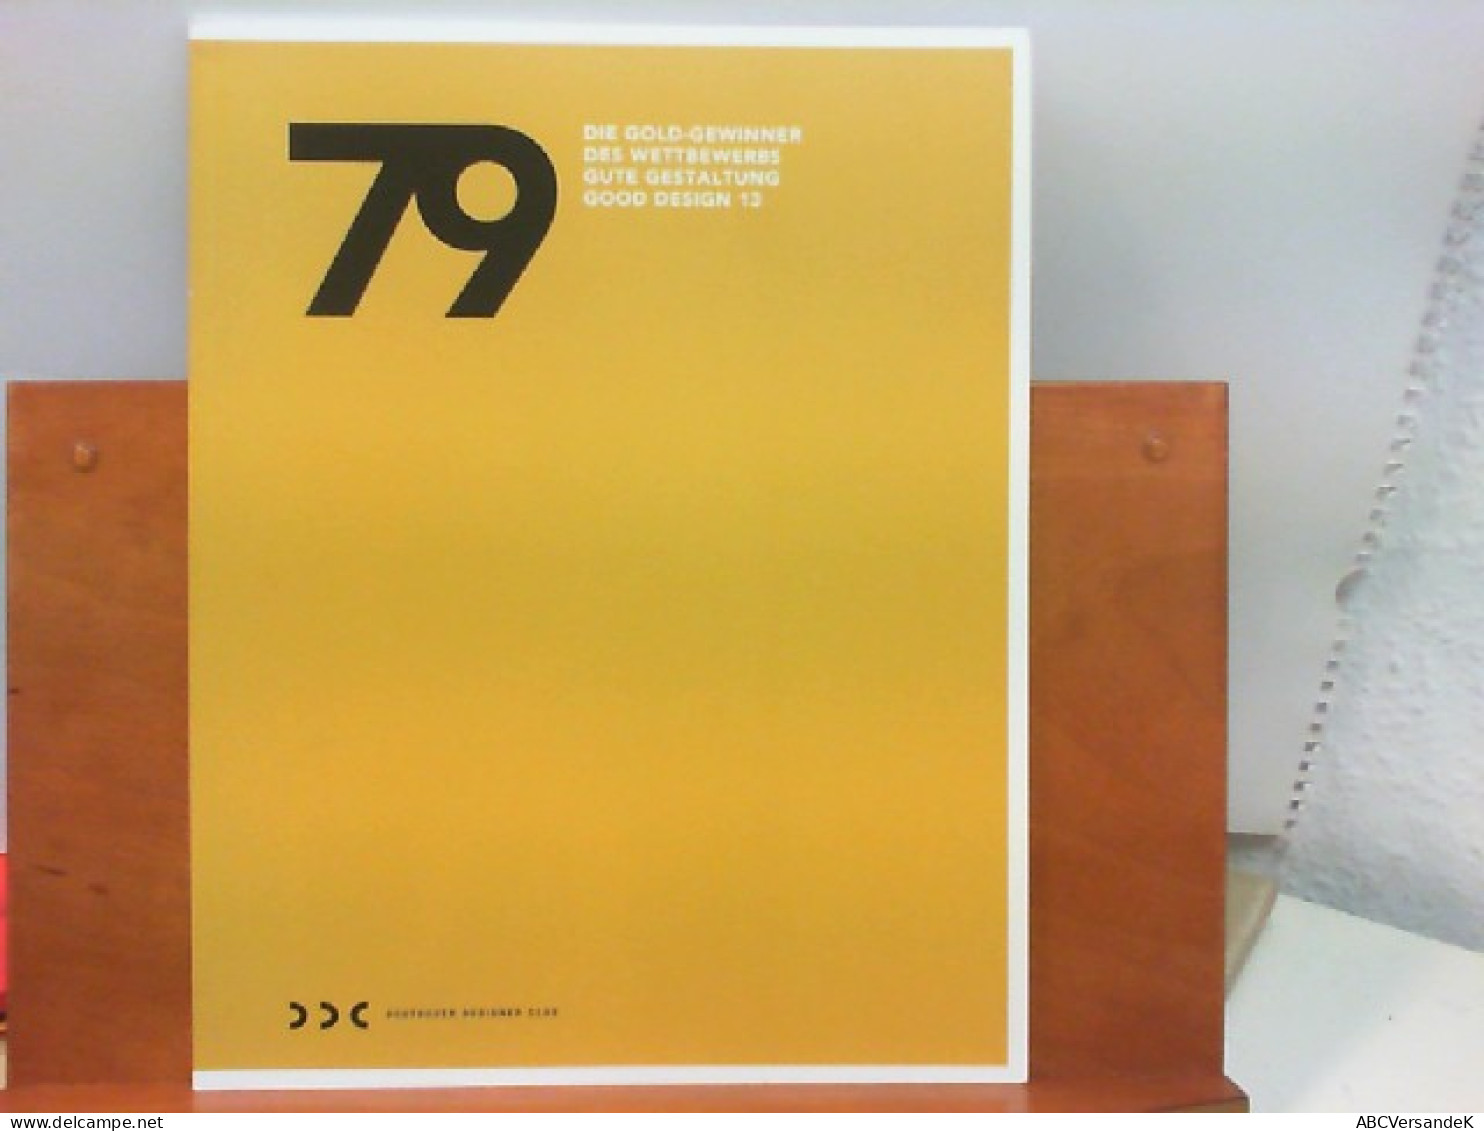 79 - Die Gold - Gewinner Des Wettbewerbs Gute Gestaltung Good Design 13 - Grafik & Design